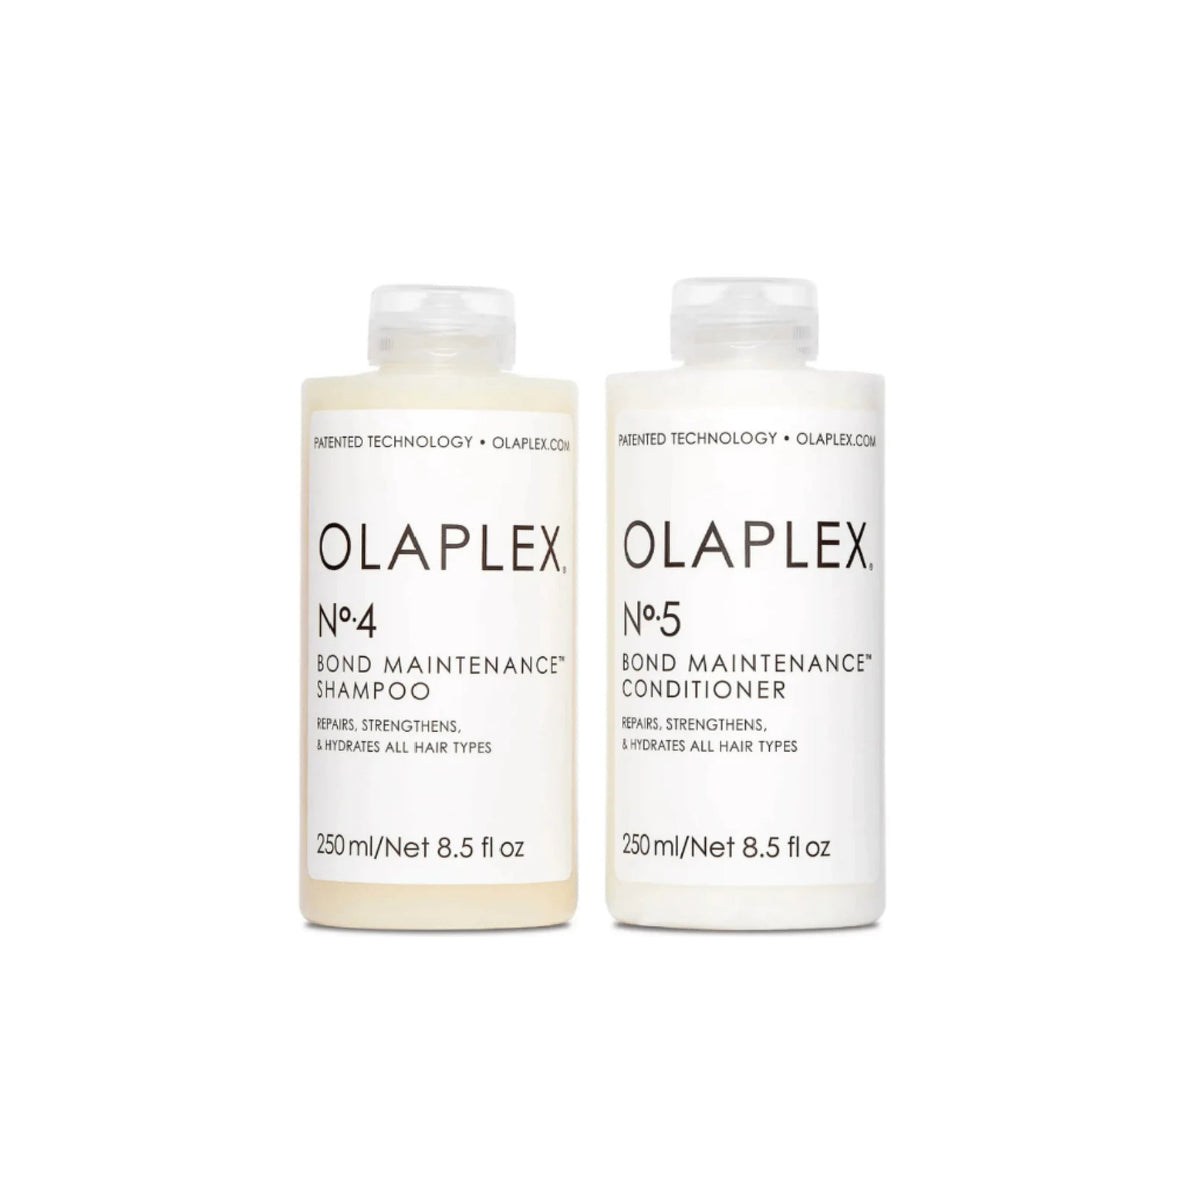 Olaplex Bond Maintenance No.4 Shampoo and No.5 Conditioner 250ml Bundle - Haircare Superstore